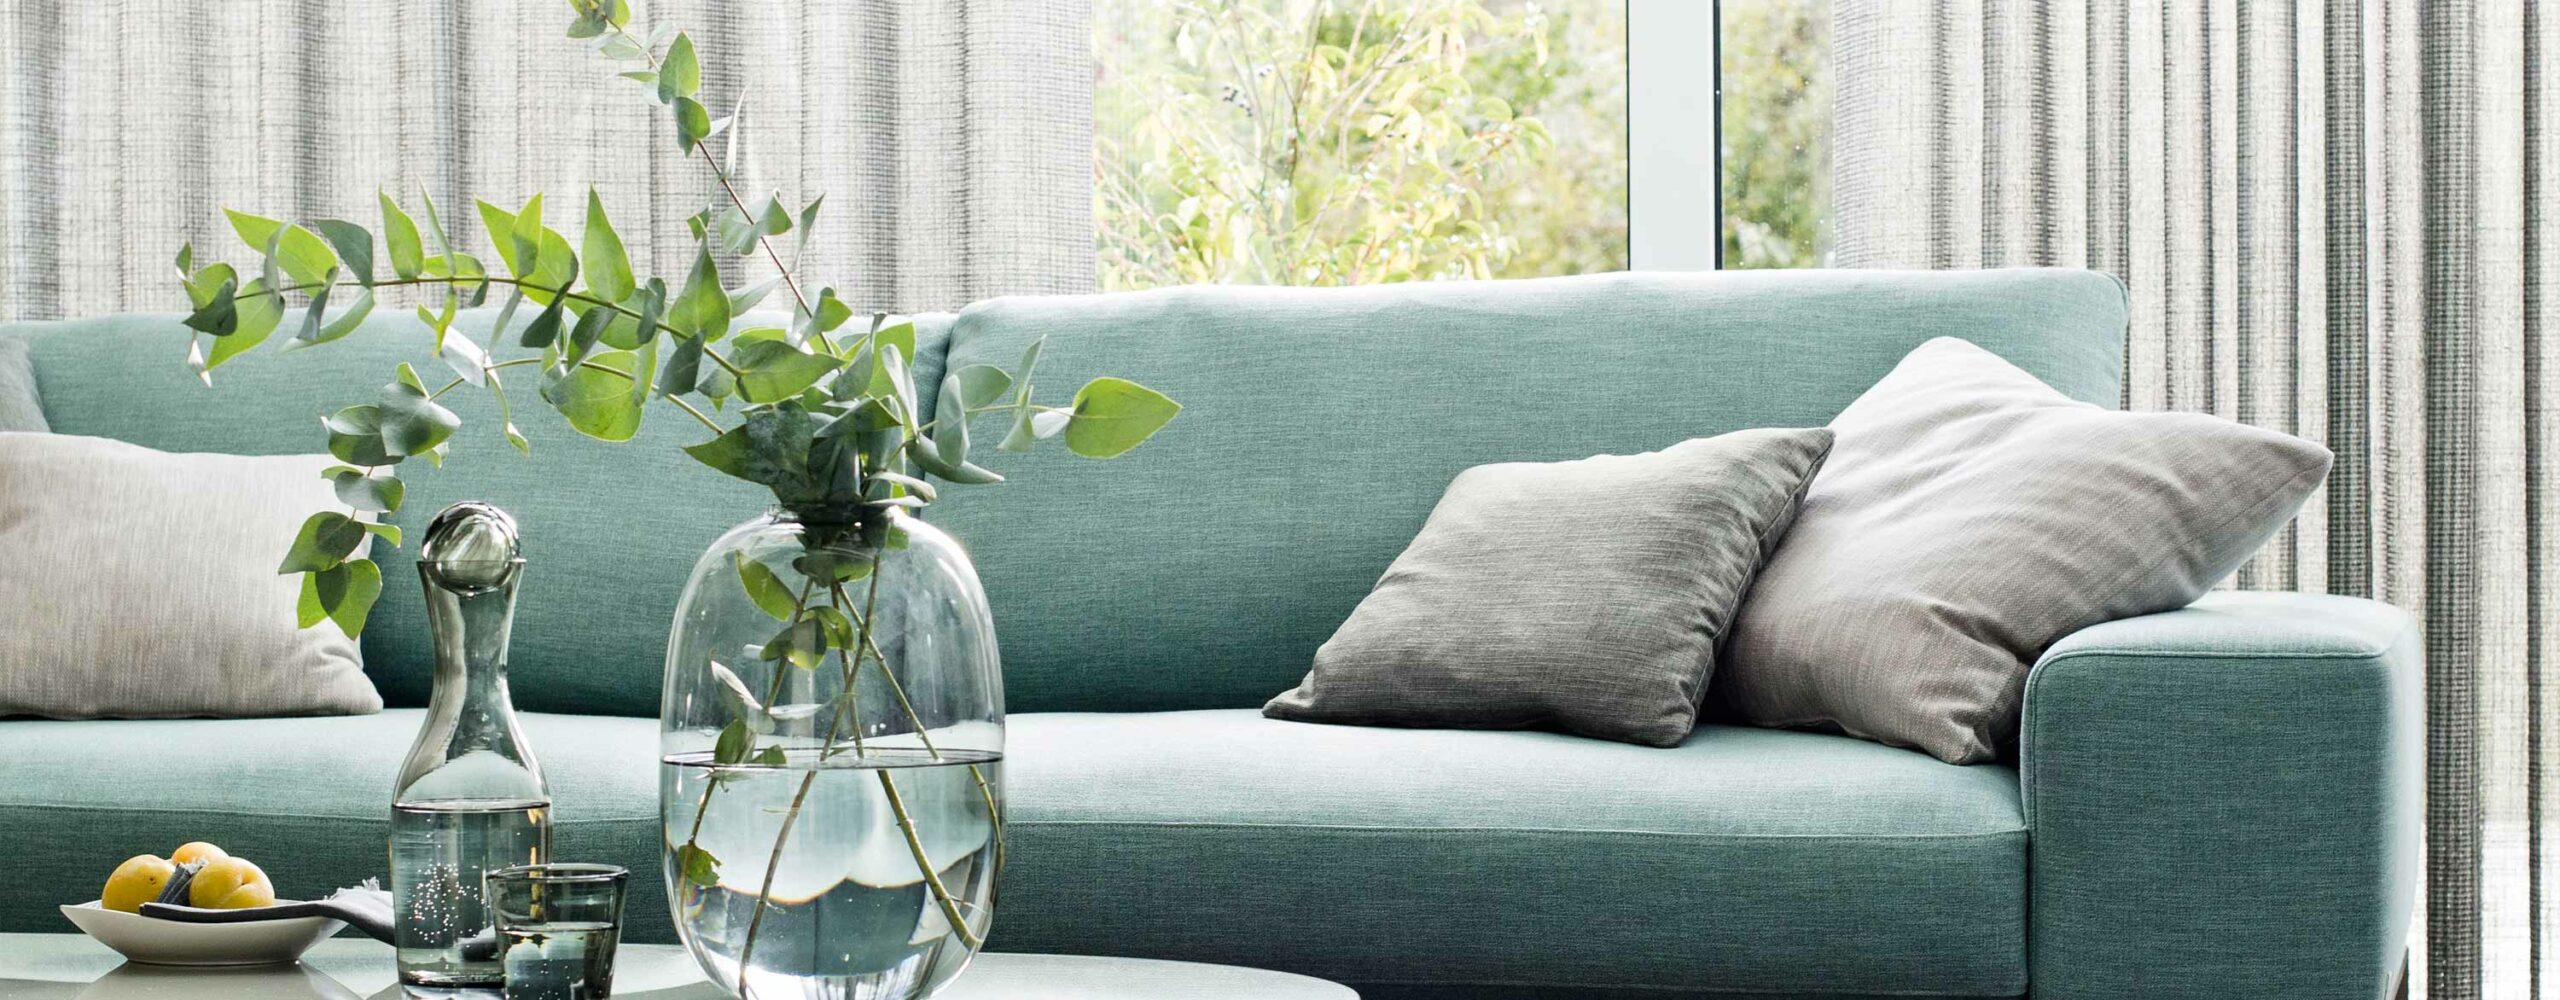 wohnzimmer couch jab anstoetz fabrics by fibreguard perfect bleher raumdesign und handwerk raumgestalter nürtingen